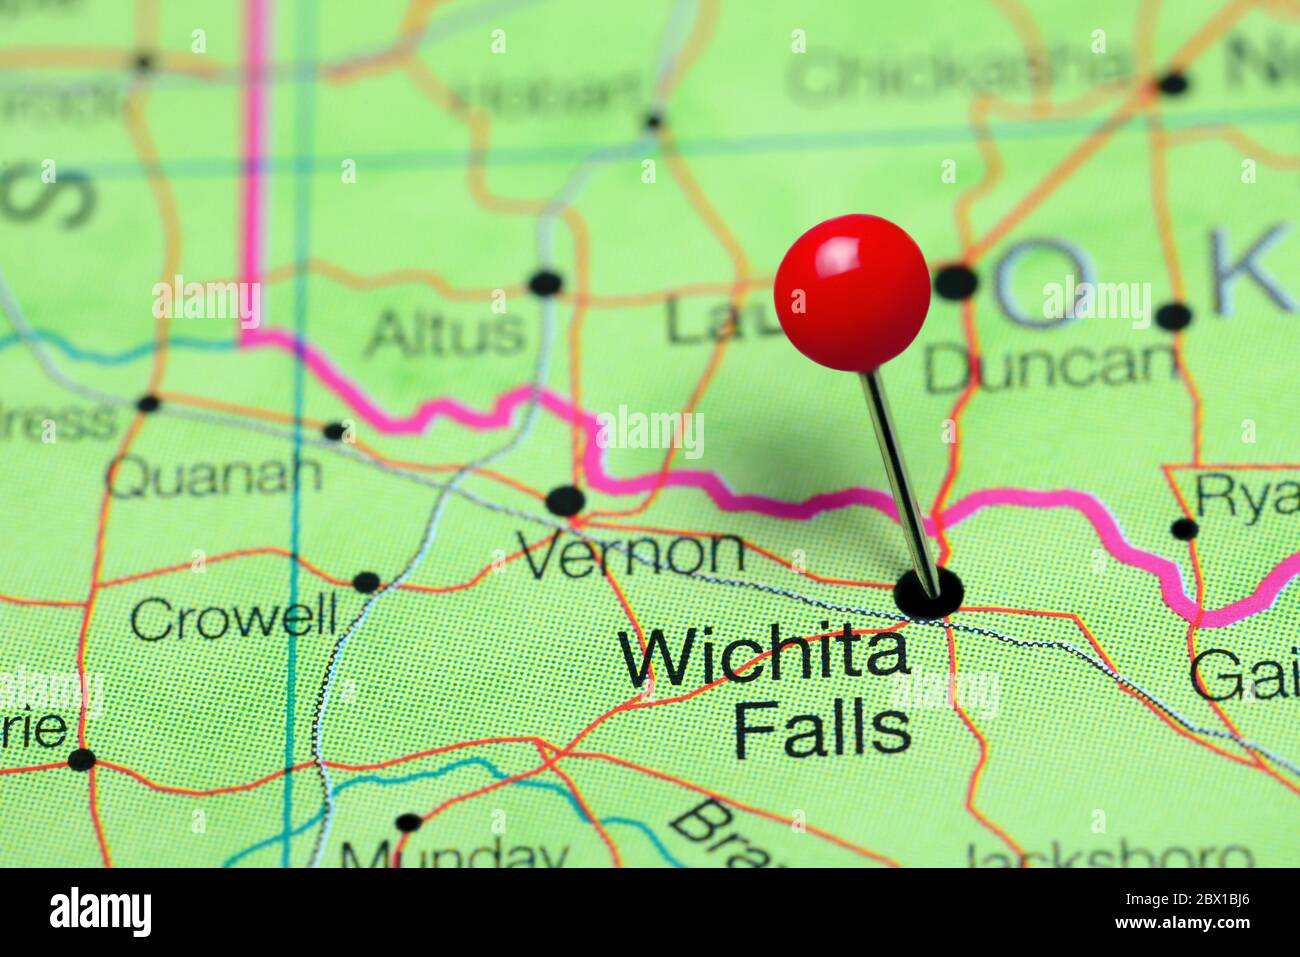 Wichita Falls cubrió un mapa de Texas, Estados Unidos Foto de stock